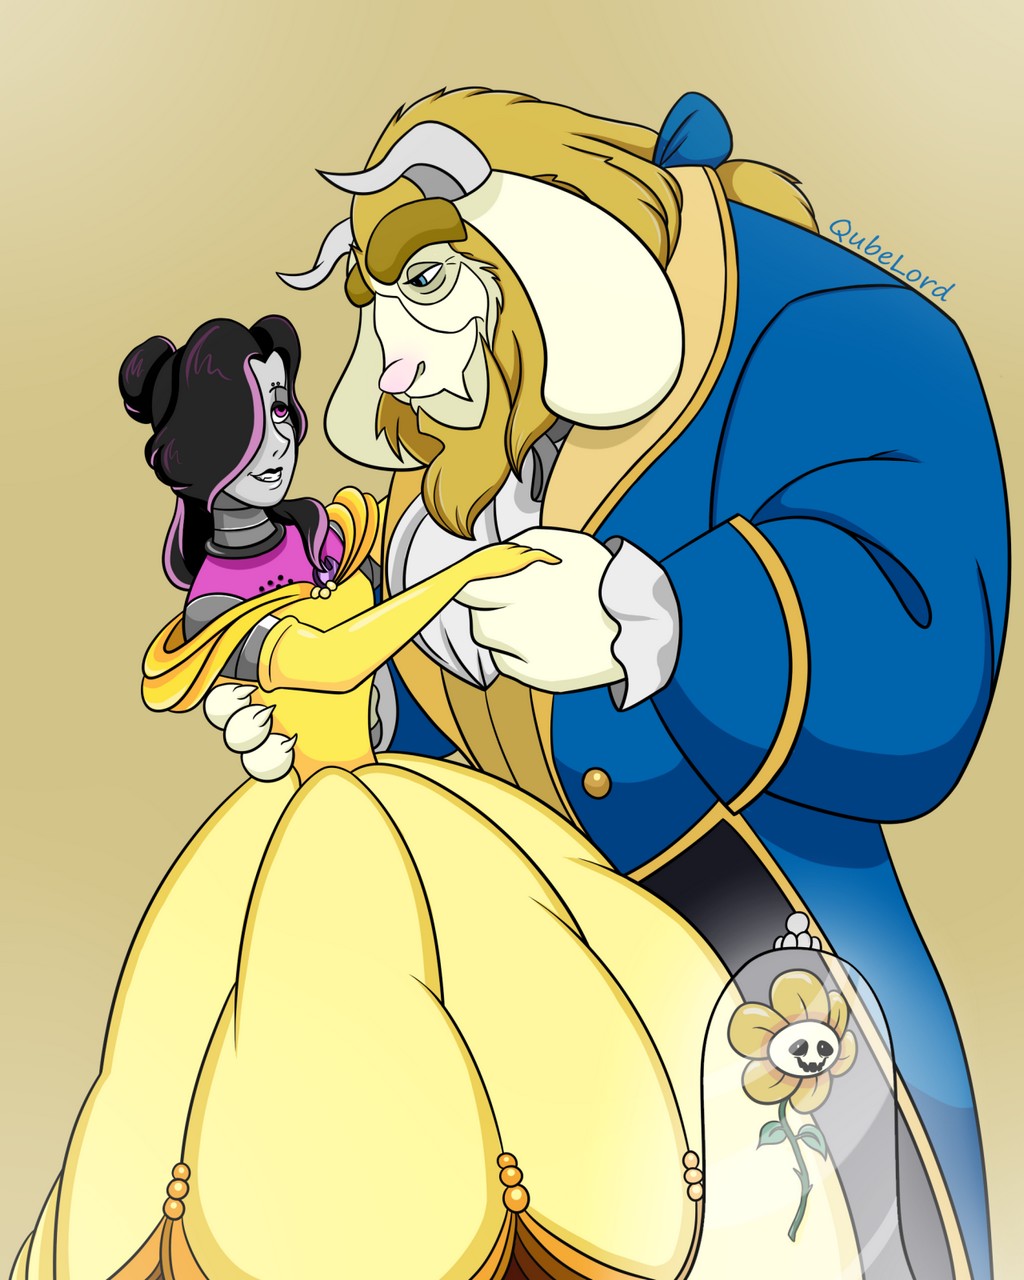 Asgore Dreemurr Beast Disney Belle Beauty And The Beast Flowey The Flower Mettaton Mettaton Ex By Qubelor